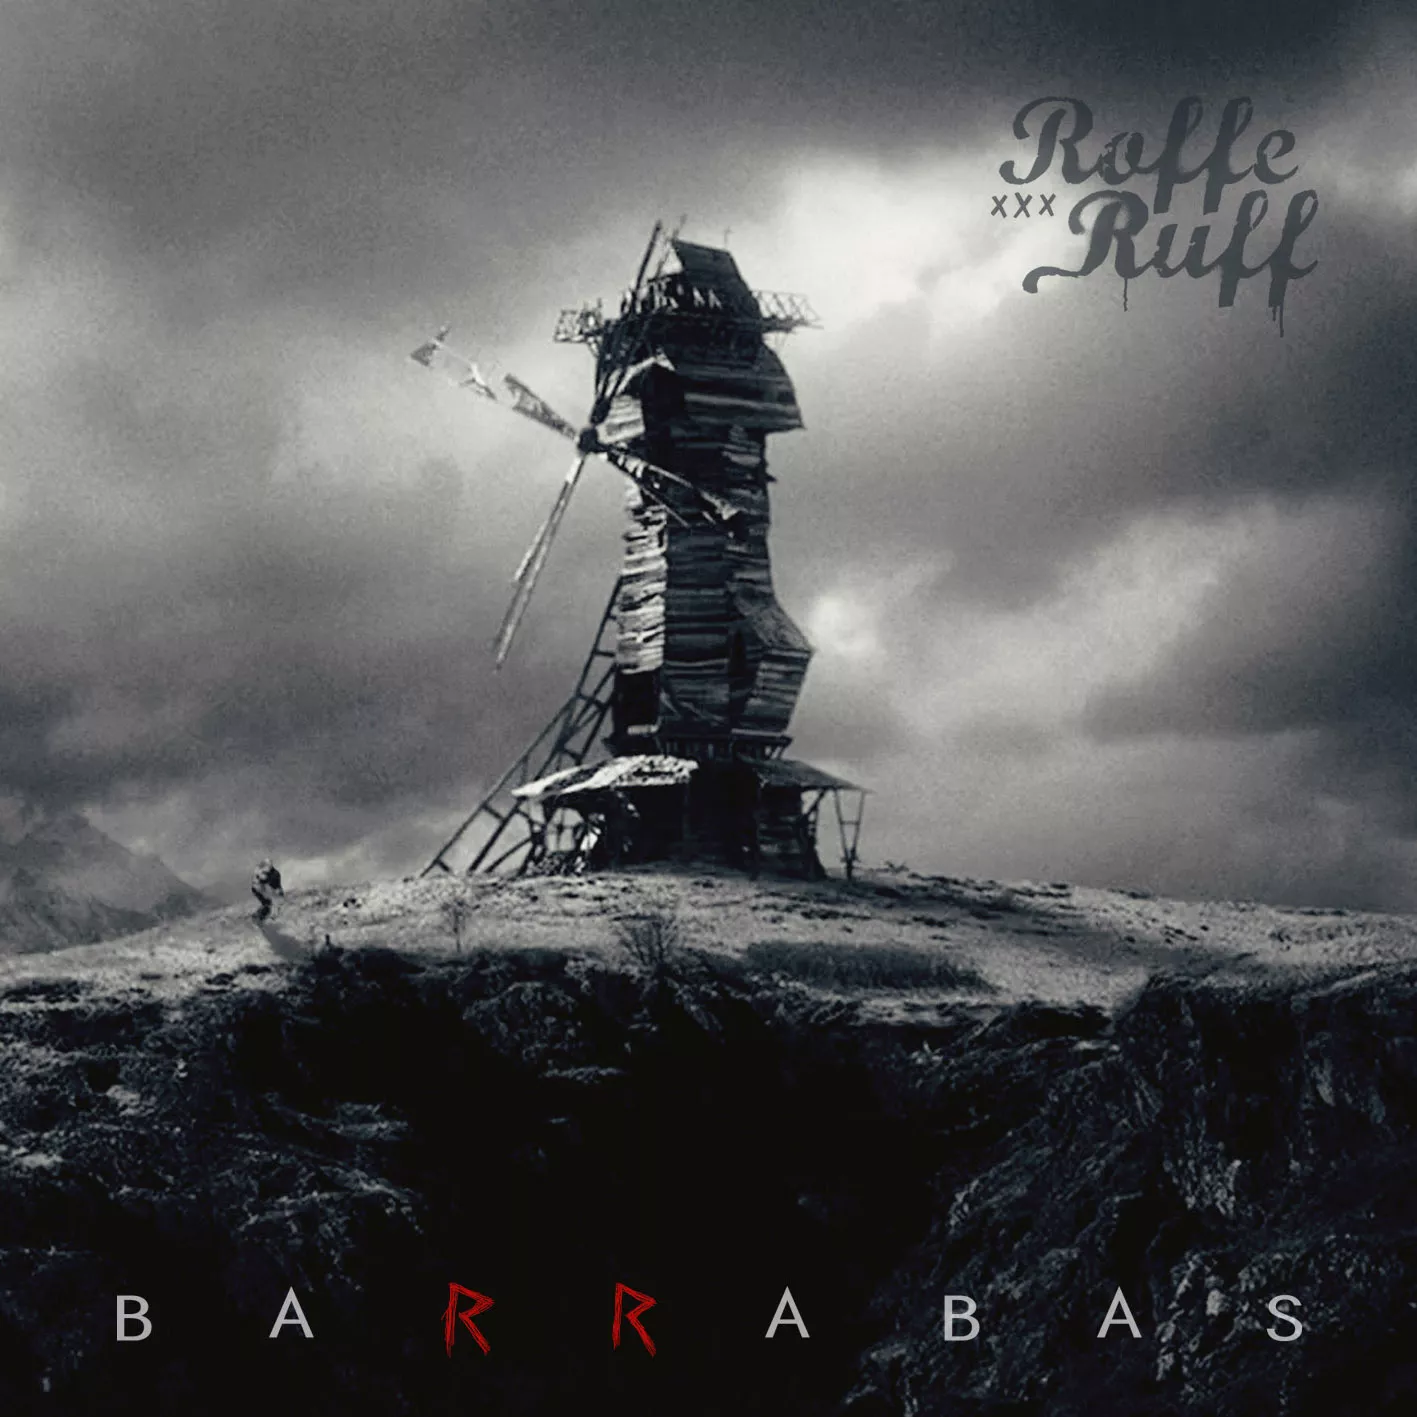 Barrabas  - Roffe Ruff